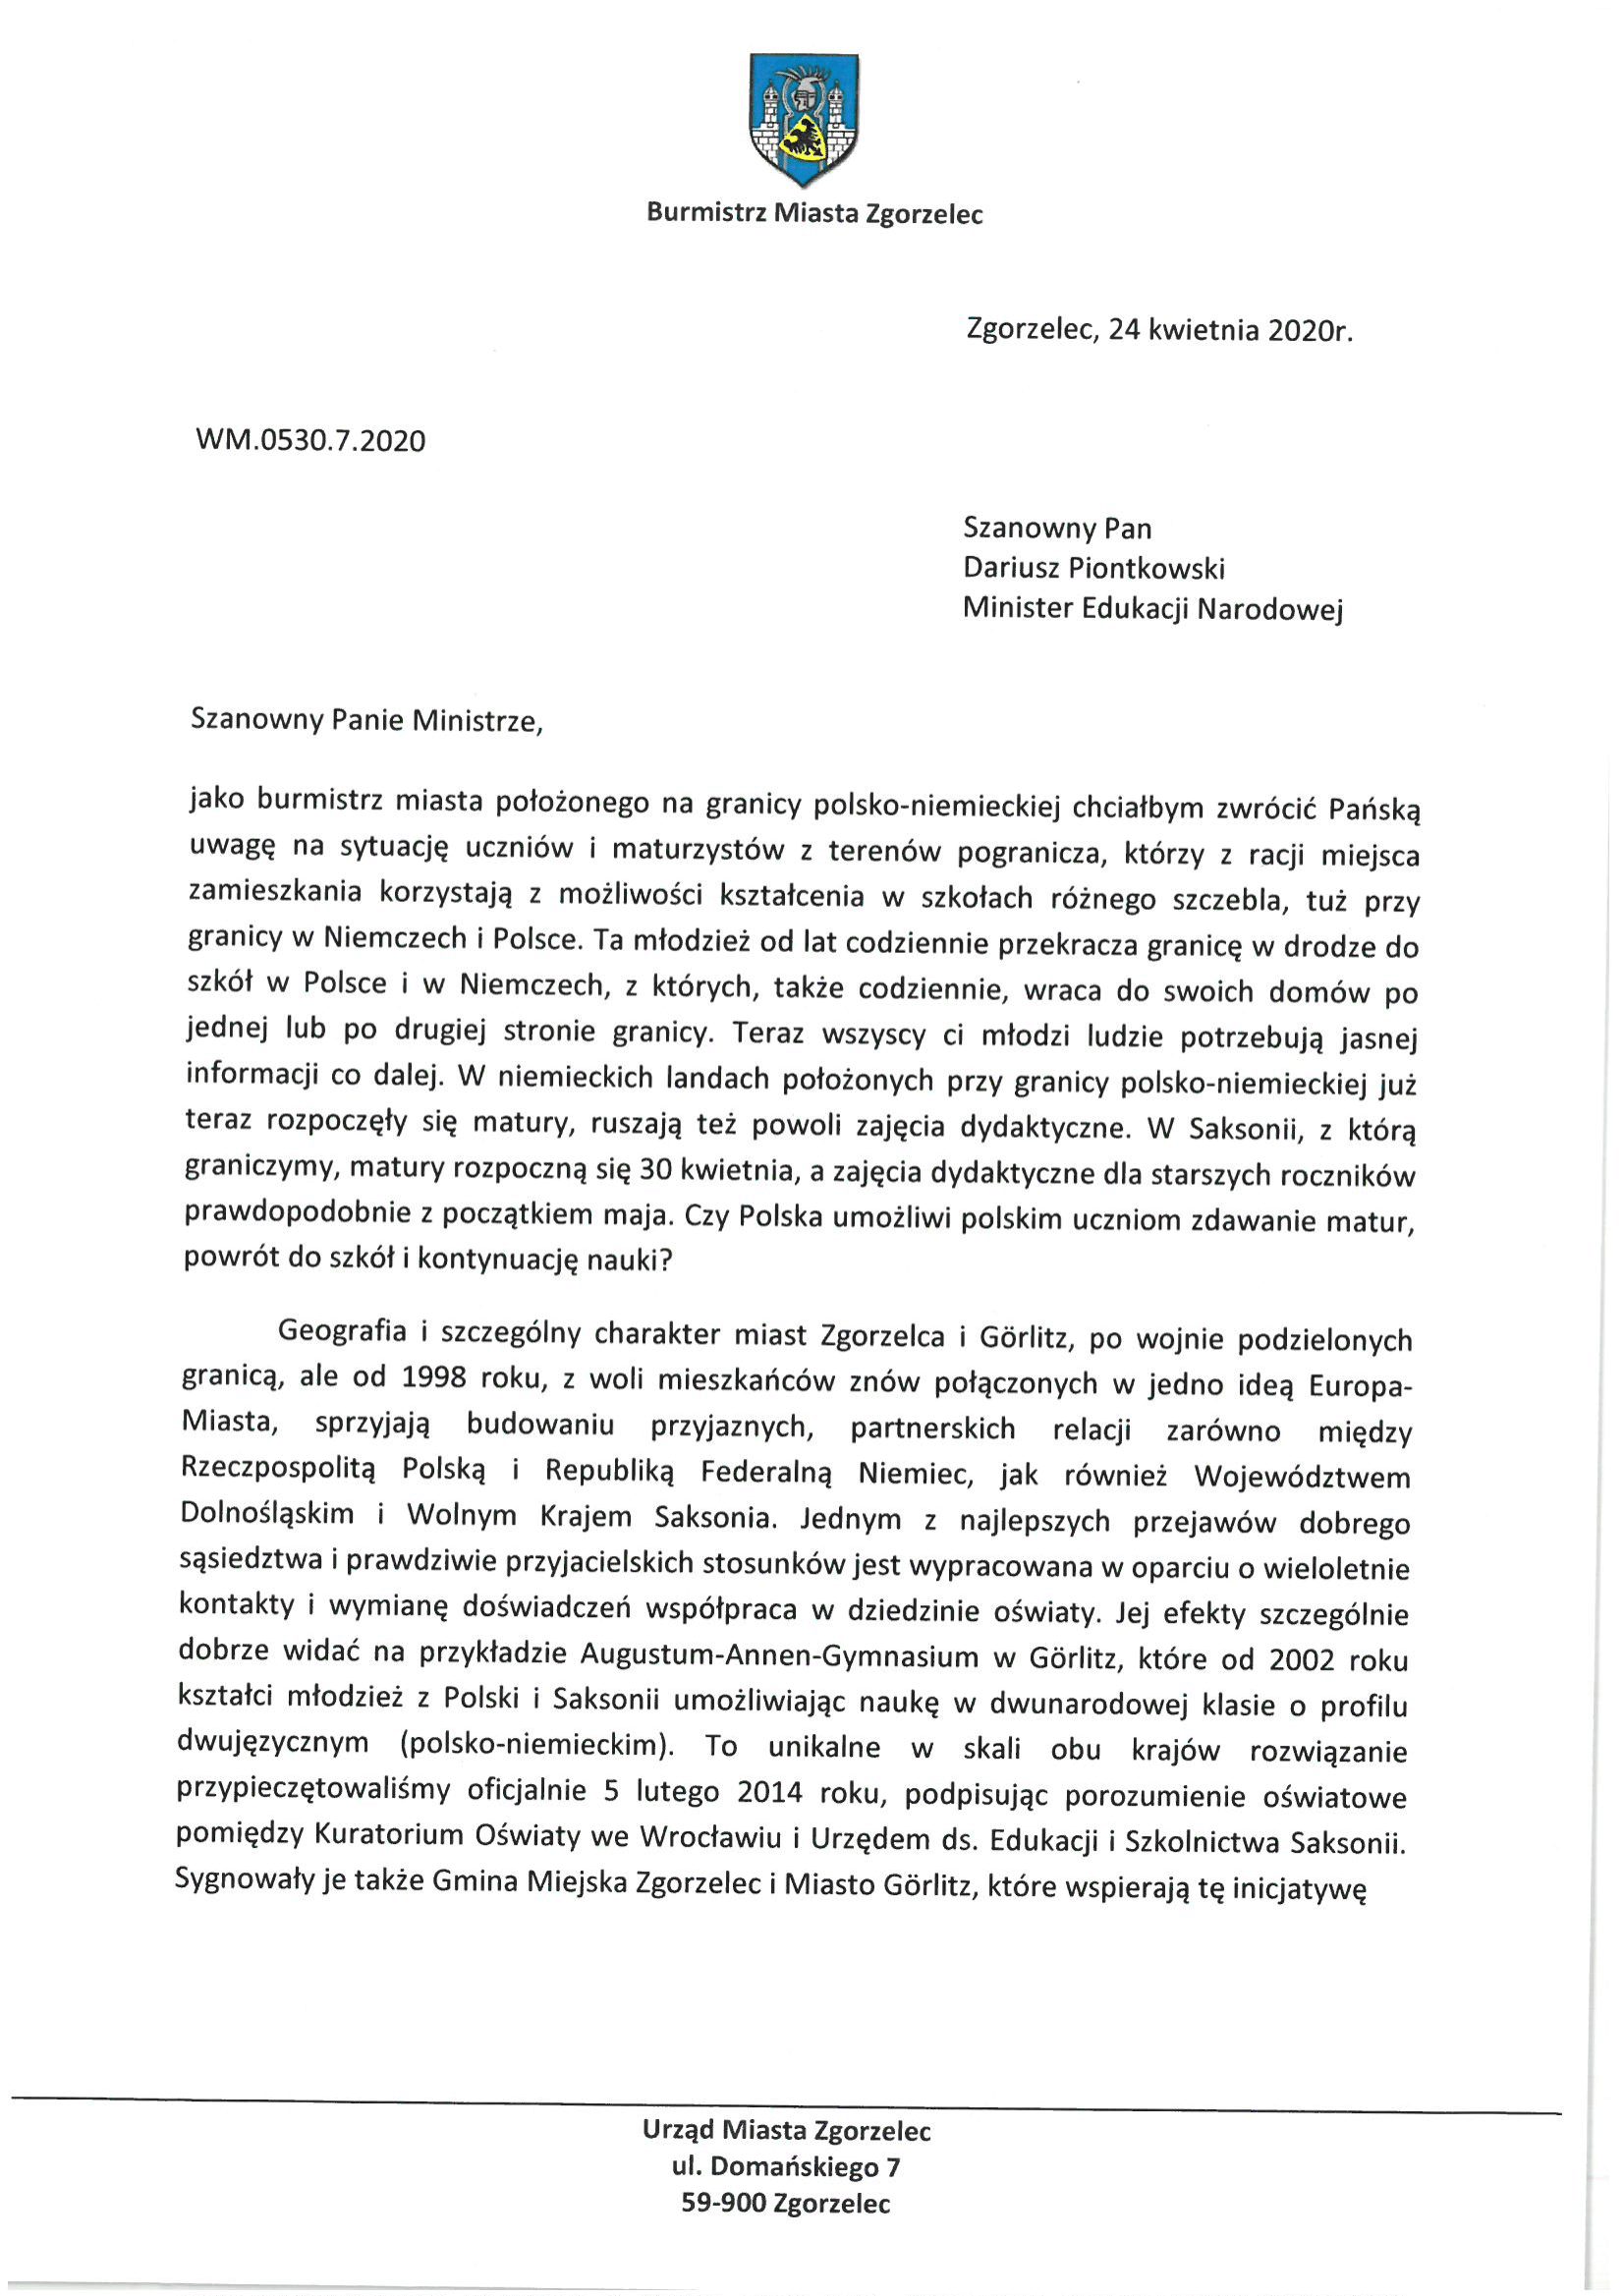 List burmistrza Rafała Gronicza do Misnistra Edukacji Dariusza Piontkowskiego w sprawie polskich uczniów uczących się po niemieckiej szkole